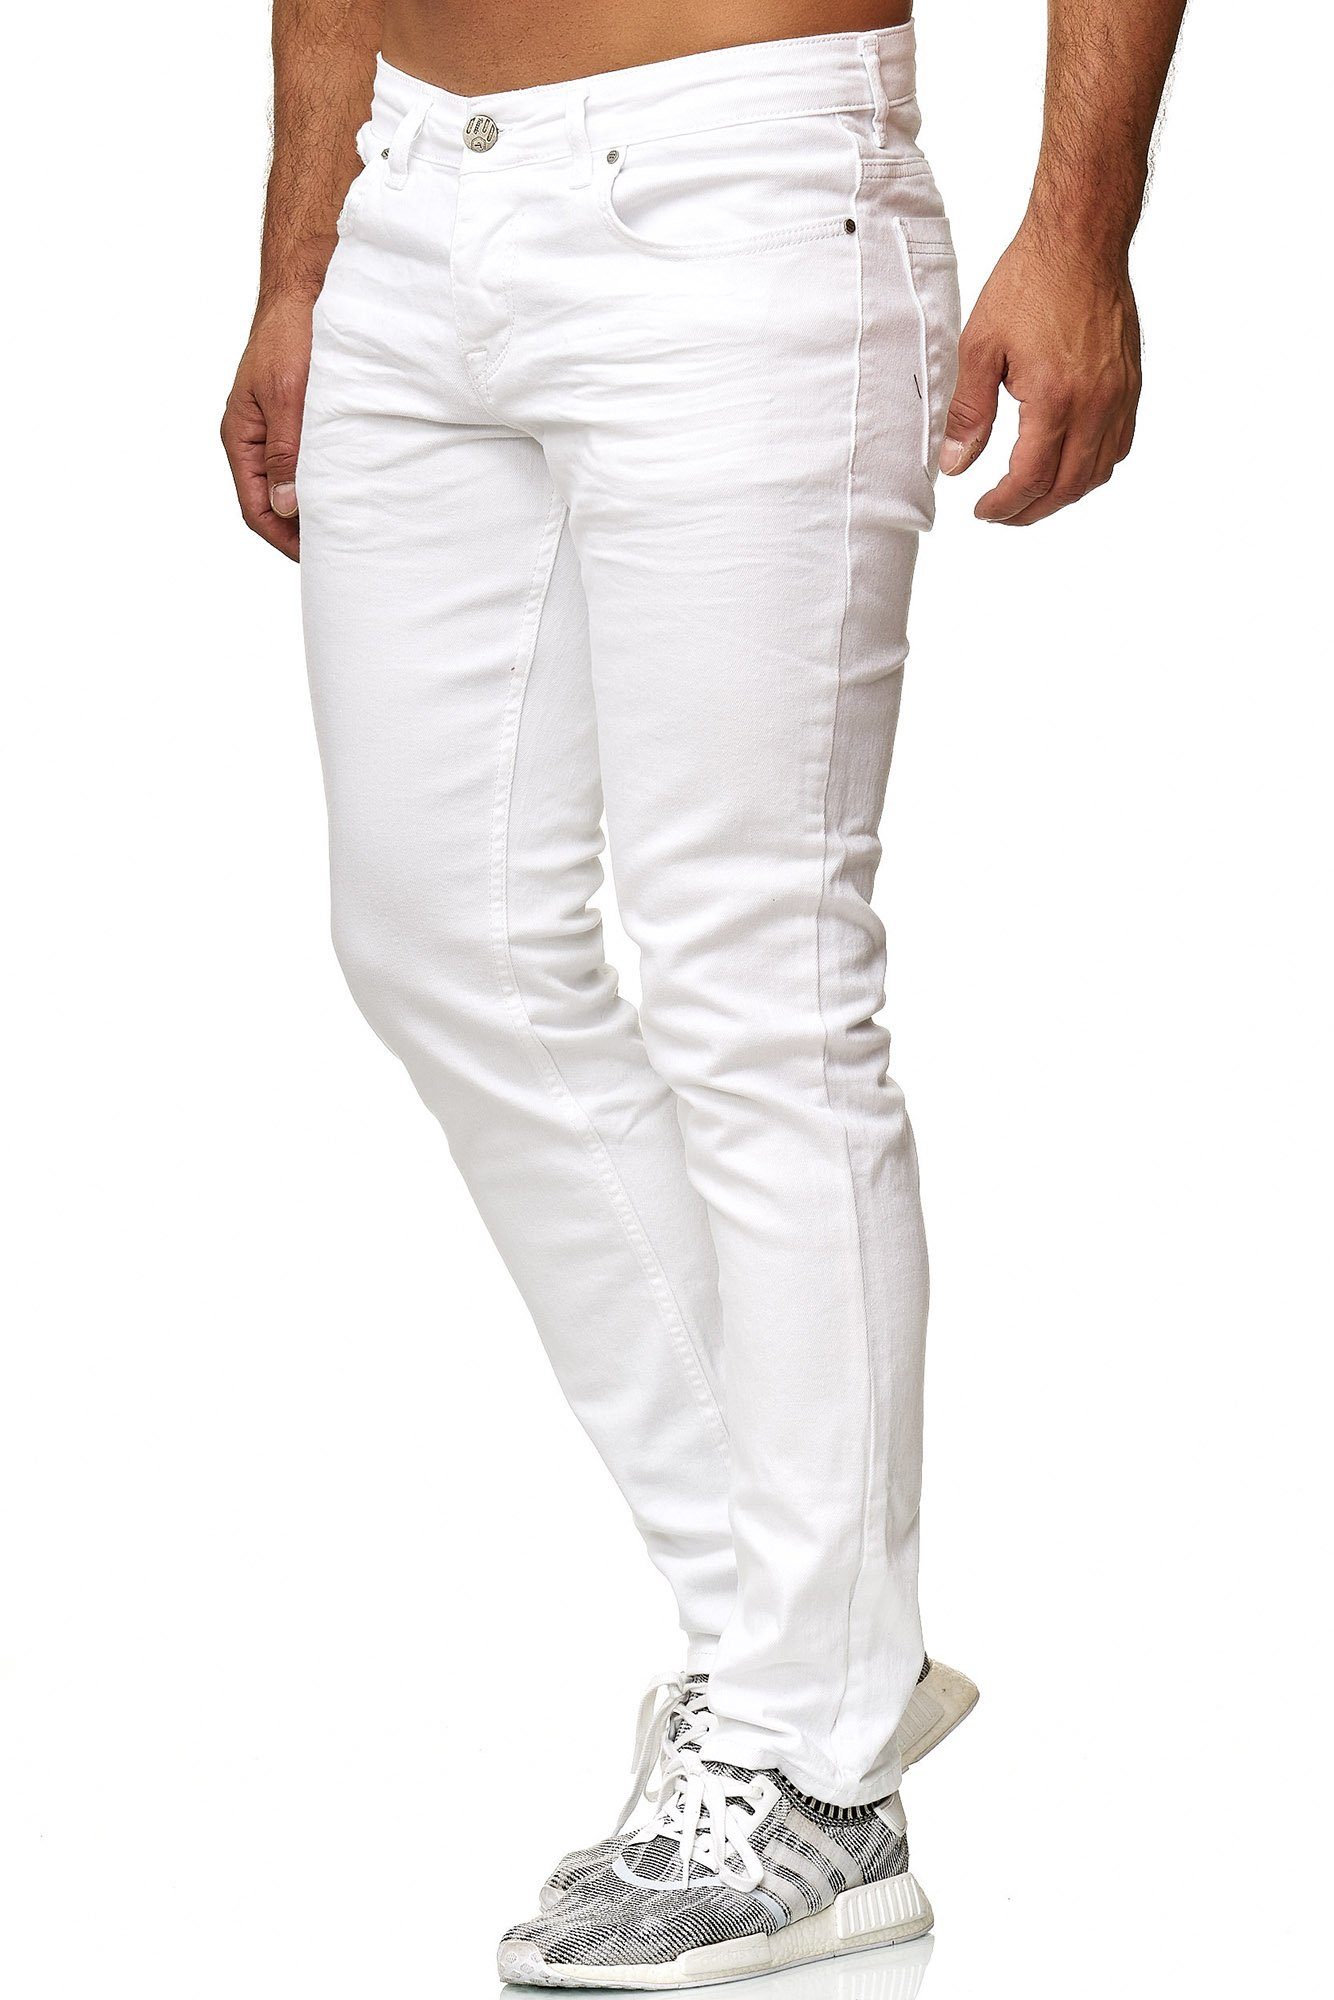 Herren Jeans in weiß online kaufen | OTTO